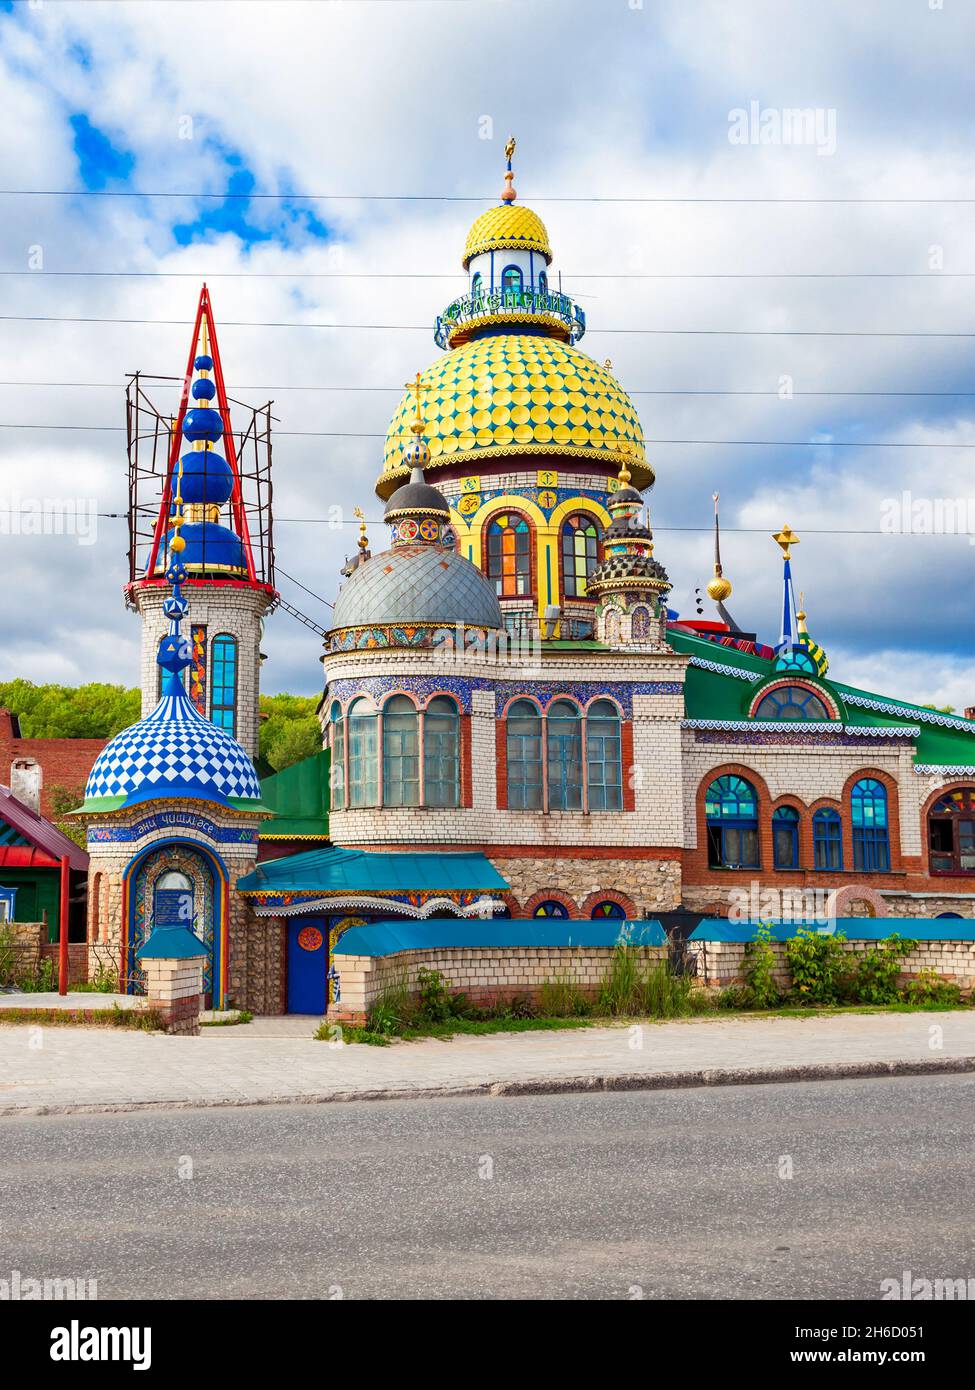 Le Temple de toutes les religions ou le Temple universel est un complexe architectural dans le Arakchino Staroye Microdistrict de Kazan, Russie. Banque D'Images